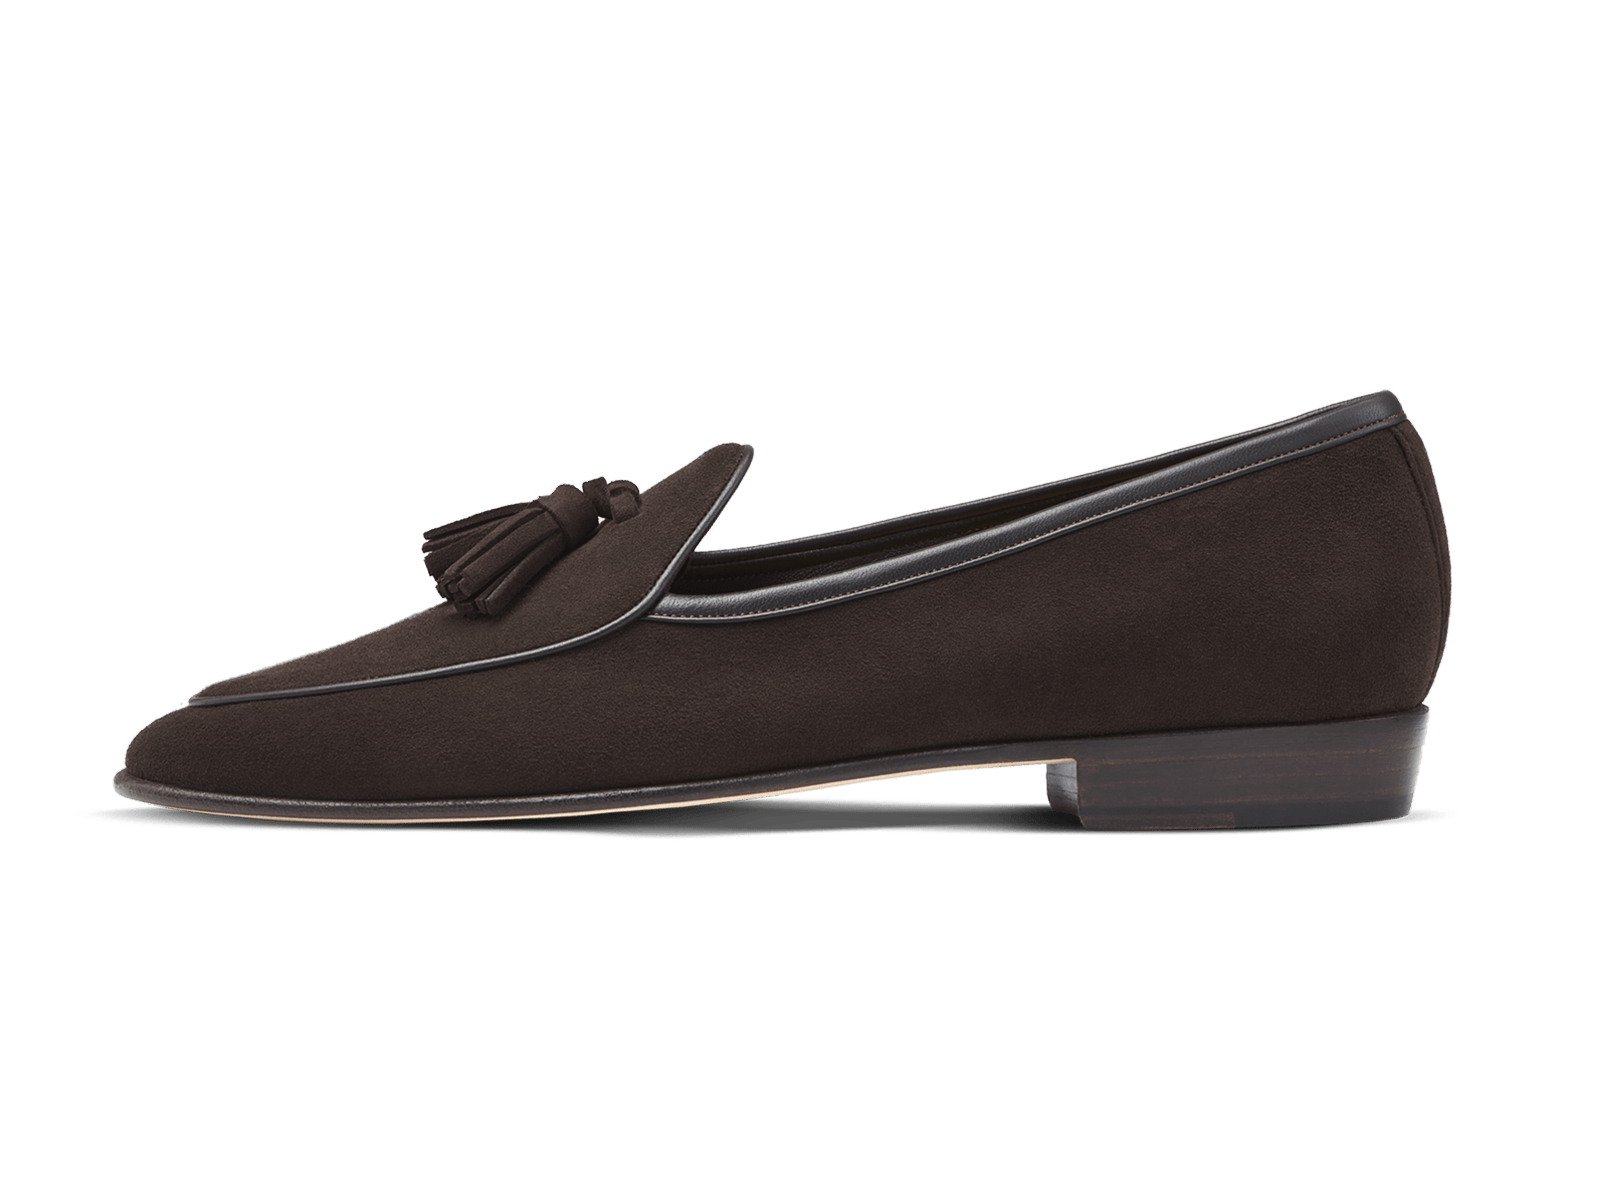 Sagan Classic Tassel Loafers in Dark Brown Suede – Baudoin & Lange